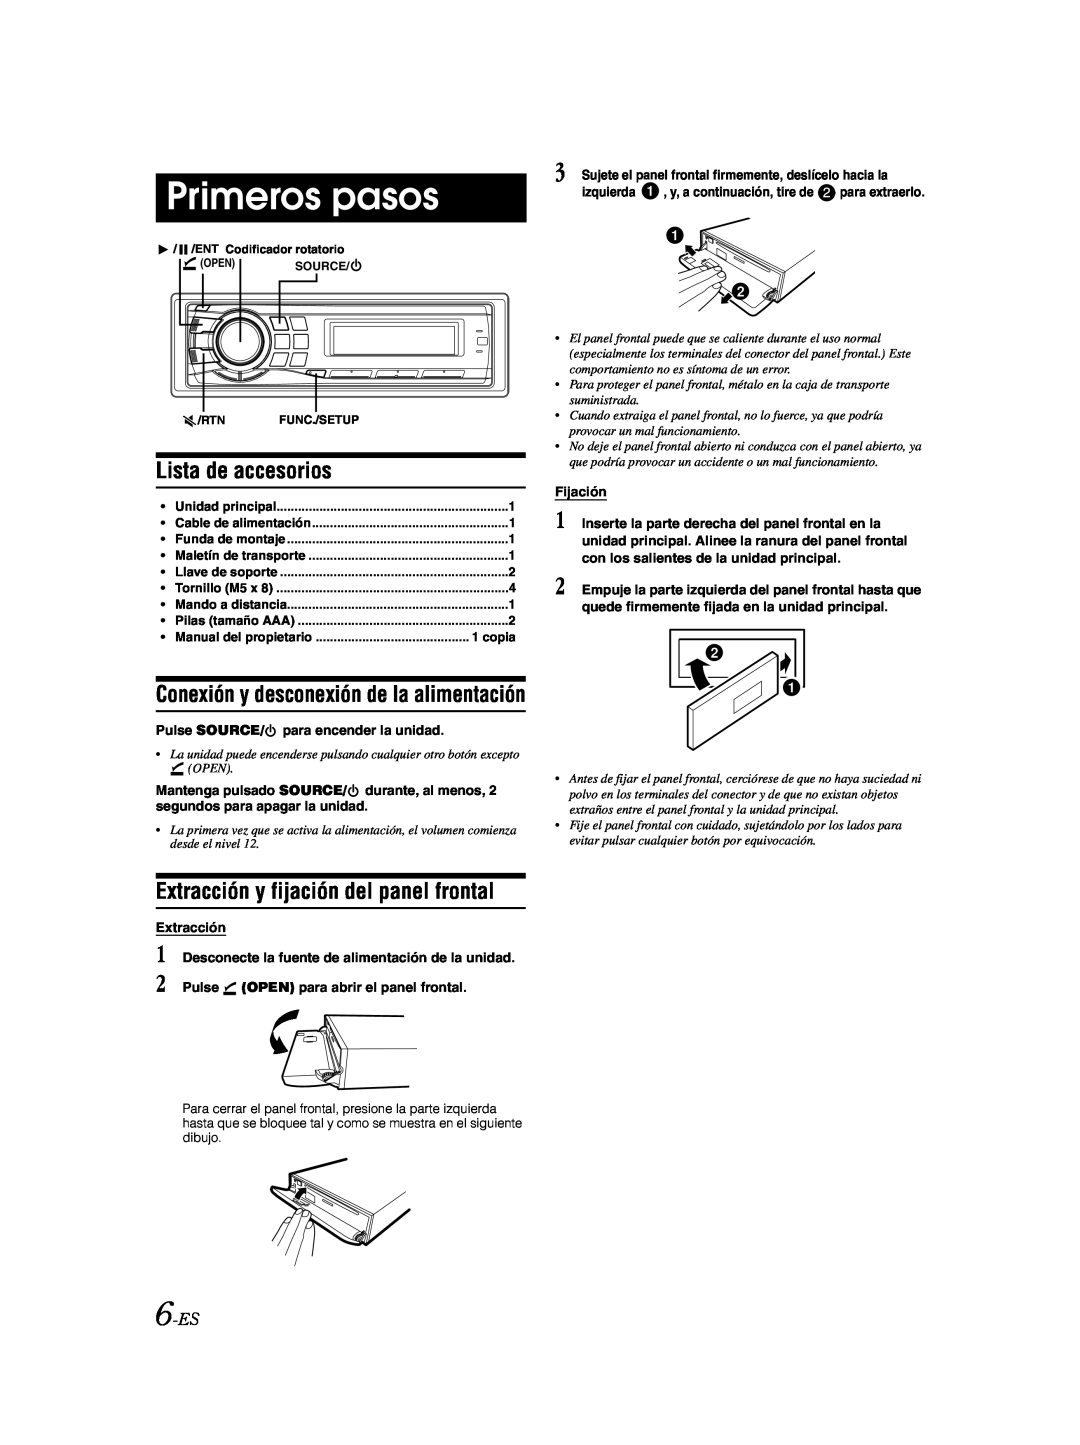 Alpine CDA-9885 owner manual Primeros pasos, Lista de accesorios, Extracción y fijación del panel frontal, 6-ES 